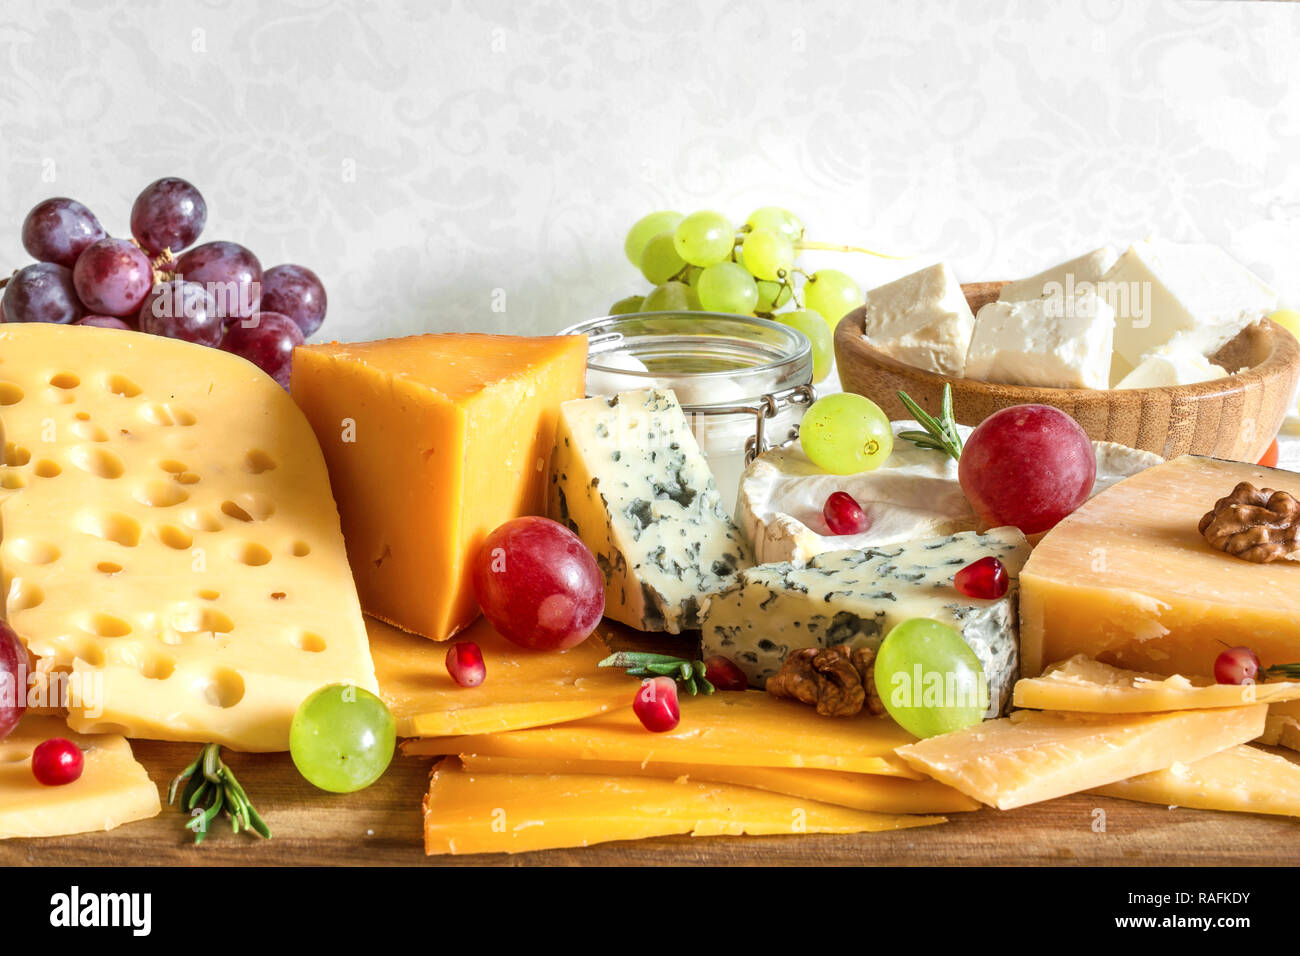 Vari tipi di formaggio con uve, rosmarino e melograno sul tagliere di legno. close up Foto Stock